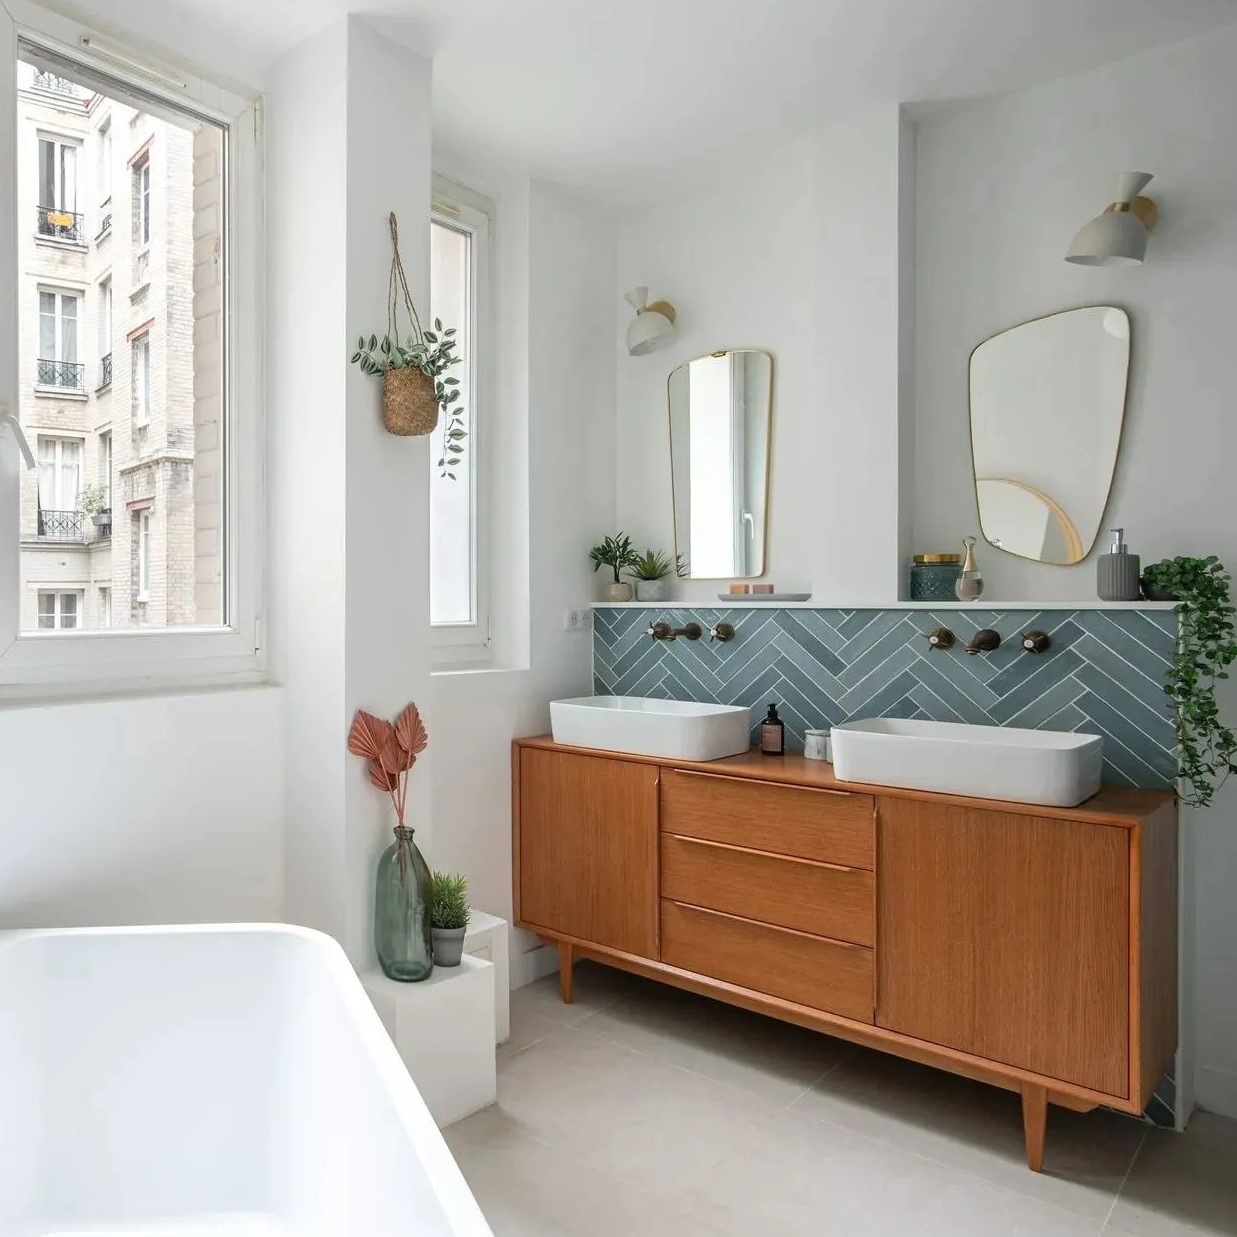 Une salle de bains avec baignoire et meuble vasque, zellige bleu posé en chevron en crédence